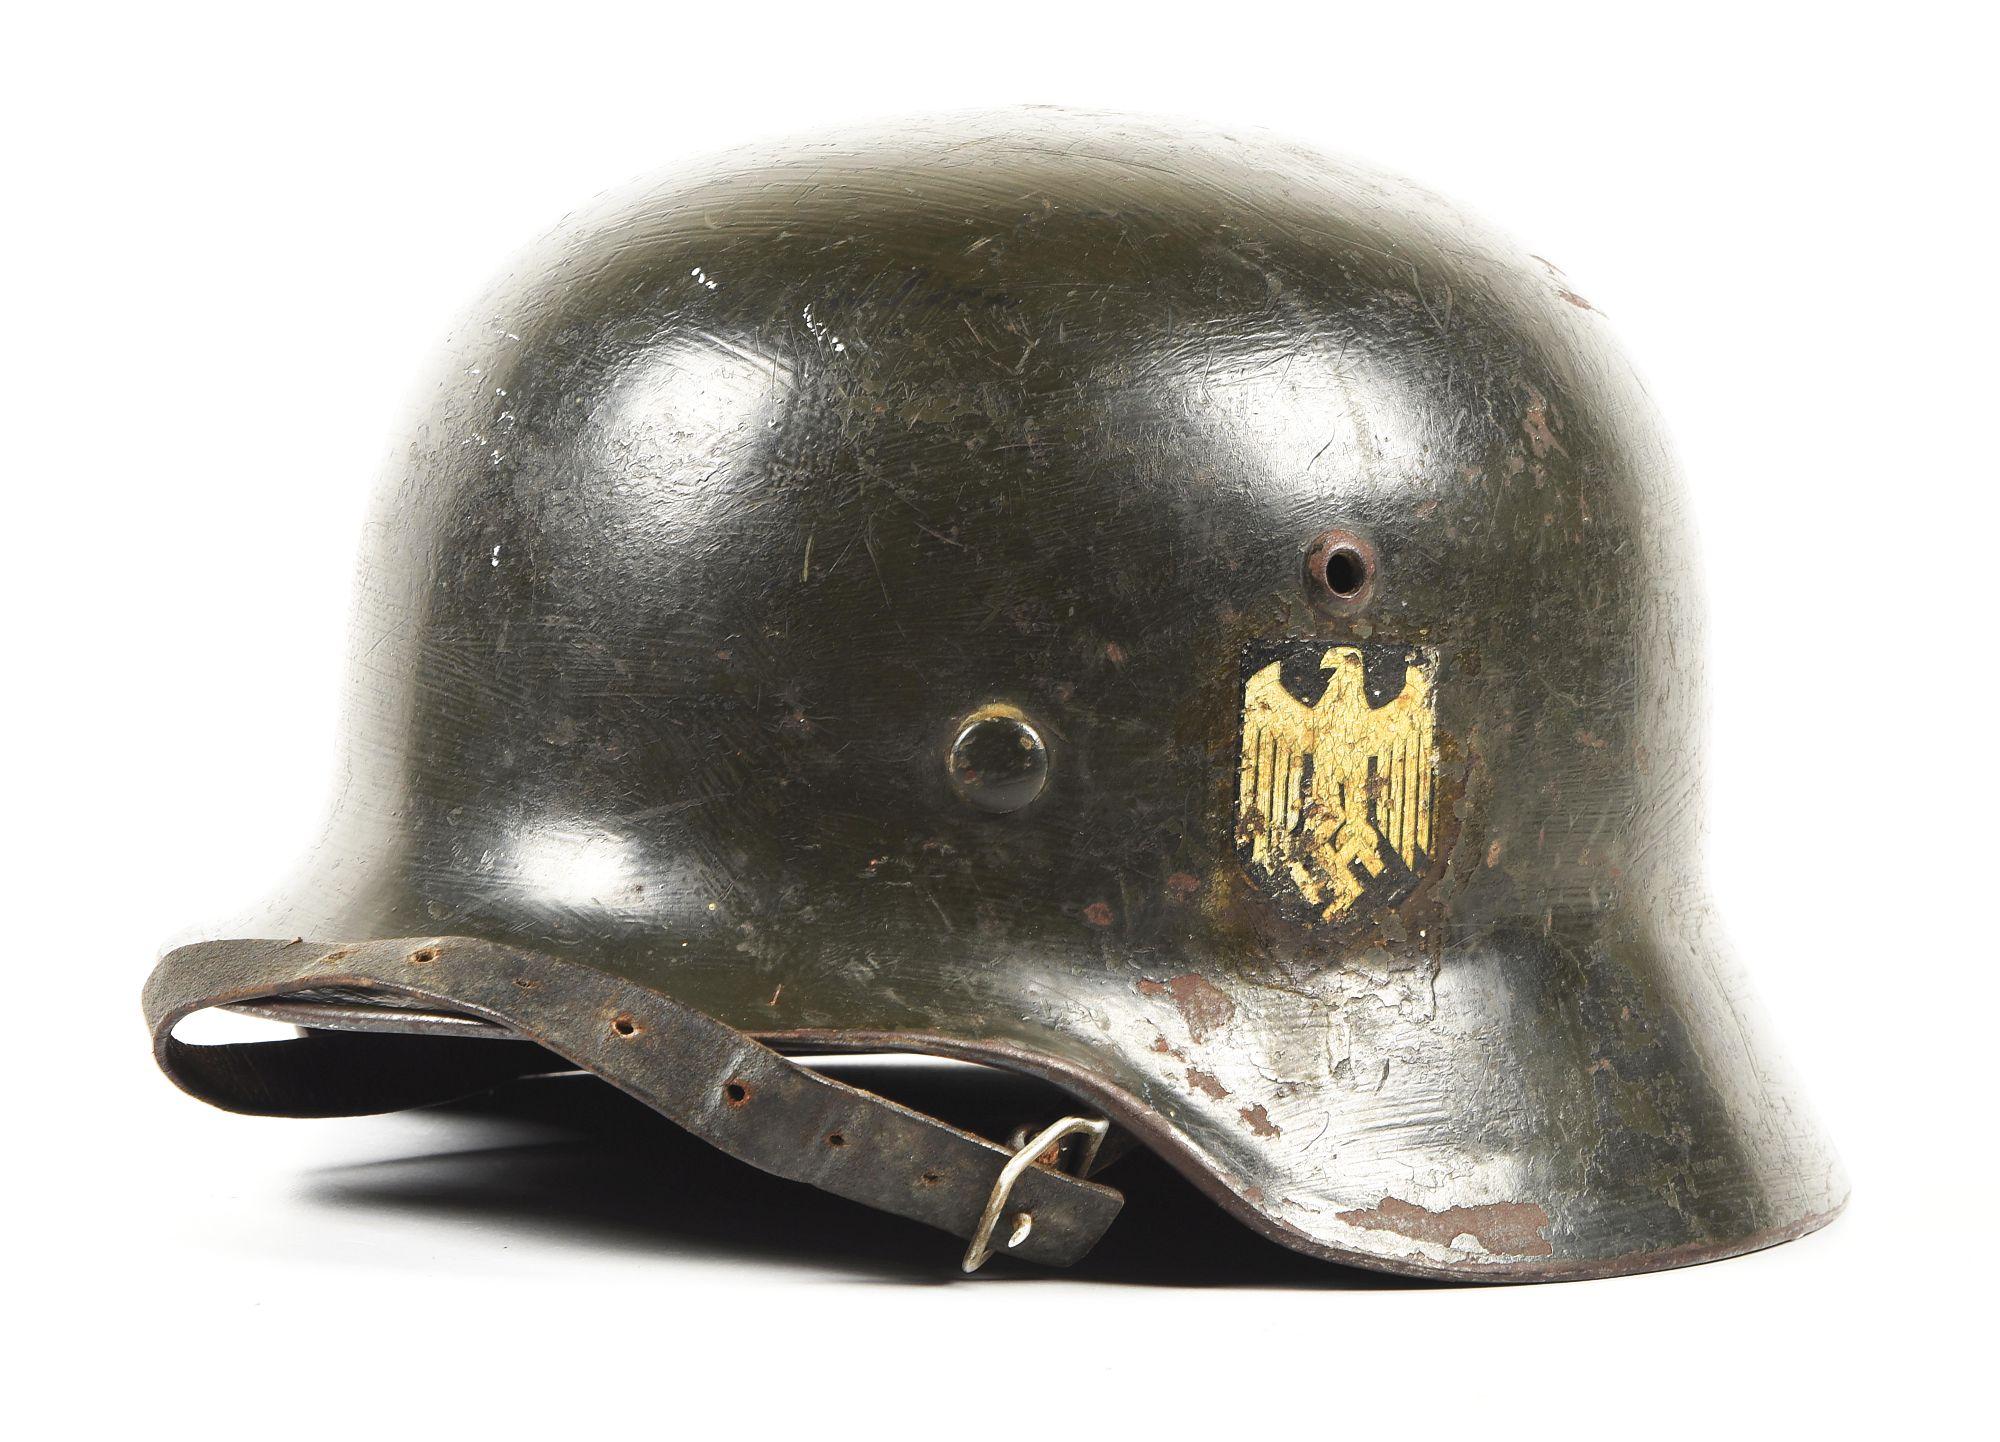 GERMAN WWII HEER DOUBLE DECAL M35 HELMET.